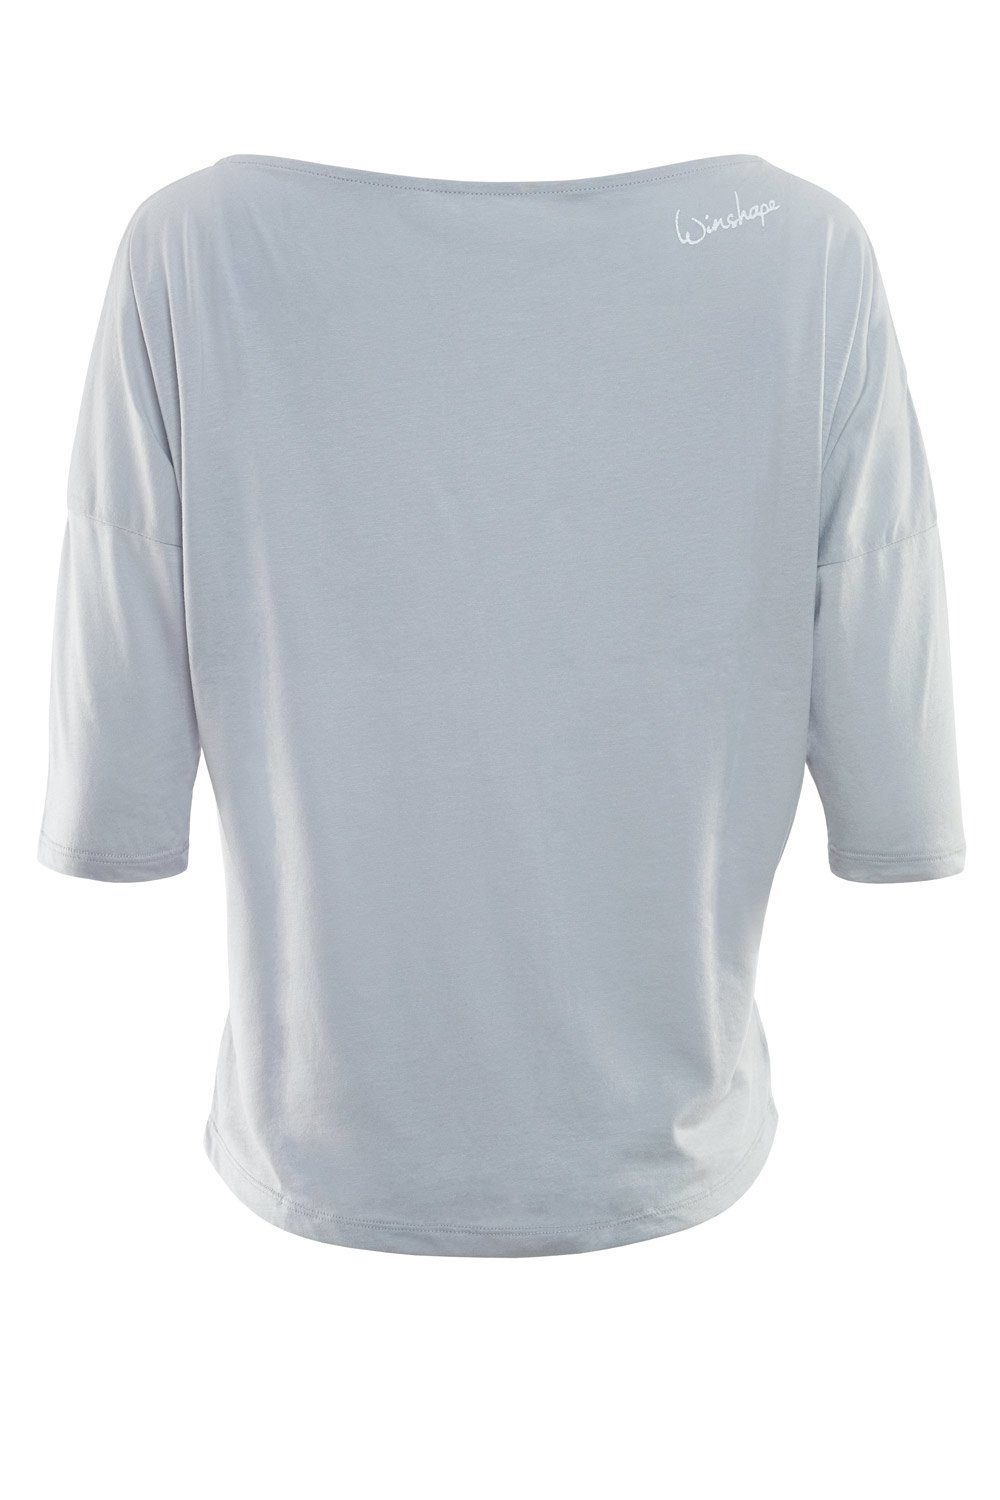 Winshape 3/4-Arm-Shirt mit leicht weiß ultra cool - weißem MCS001 glitzer grey Glitzer-Aufdruck